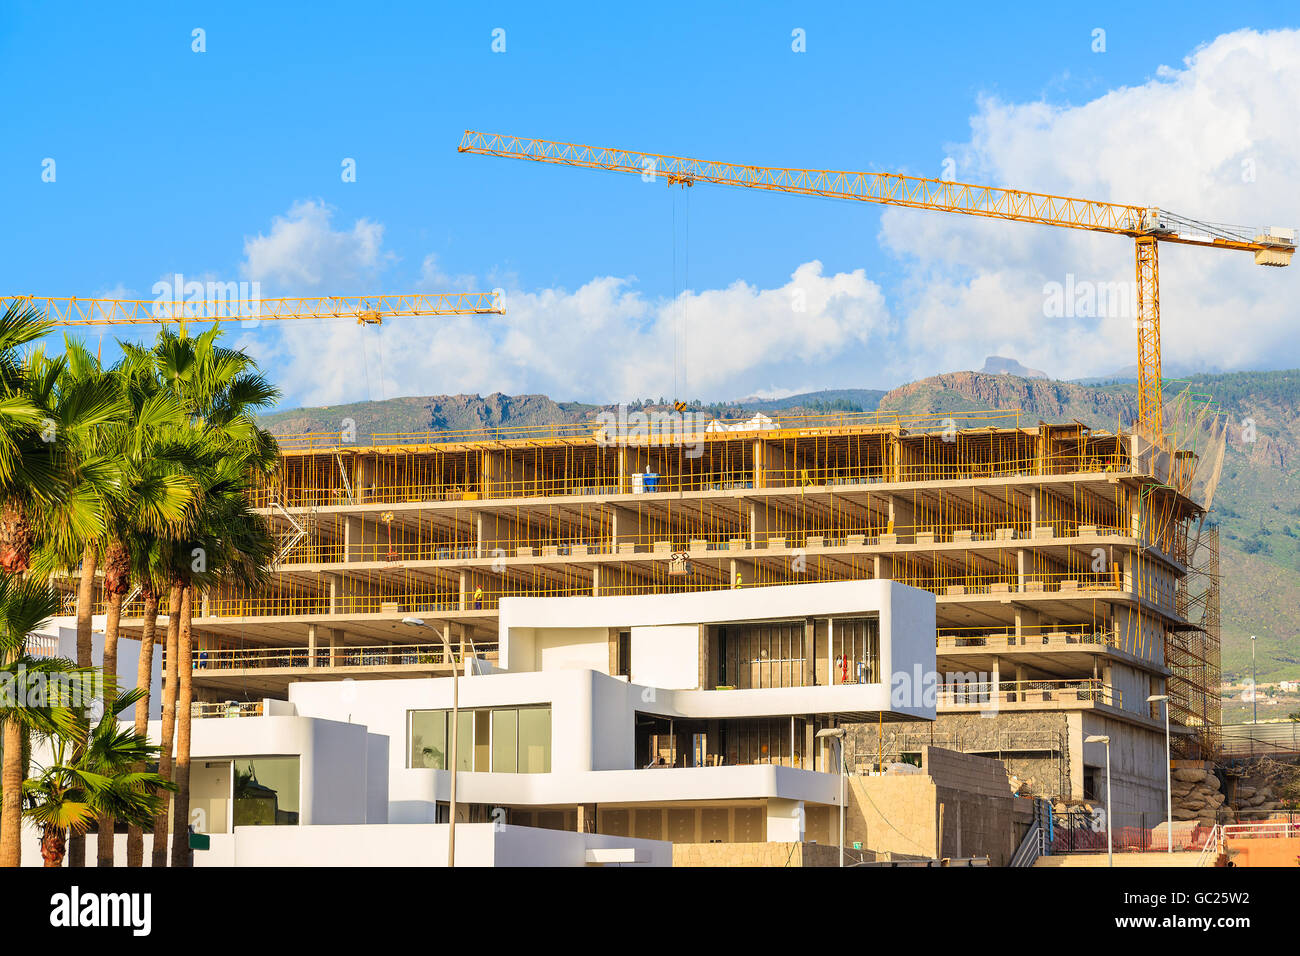 Bâtiments en construction de l'hôtel de ville sur la Costa Adeje Tenerife tropical island, Espagne Banque D'Images